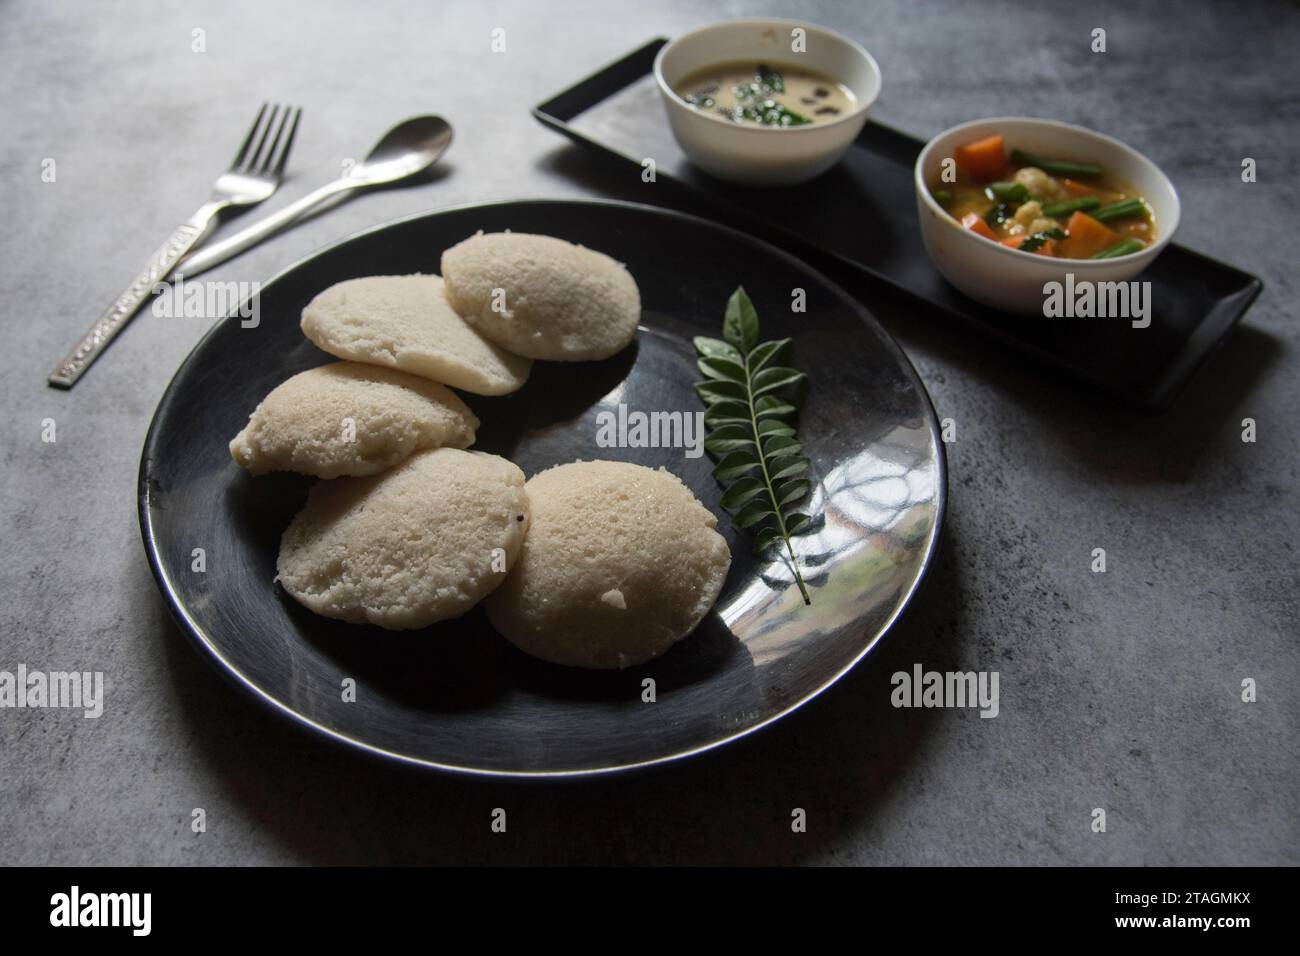 Cuisine indienne du Sud idli morceaux et sambar Banque D'Images